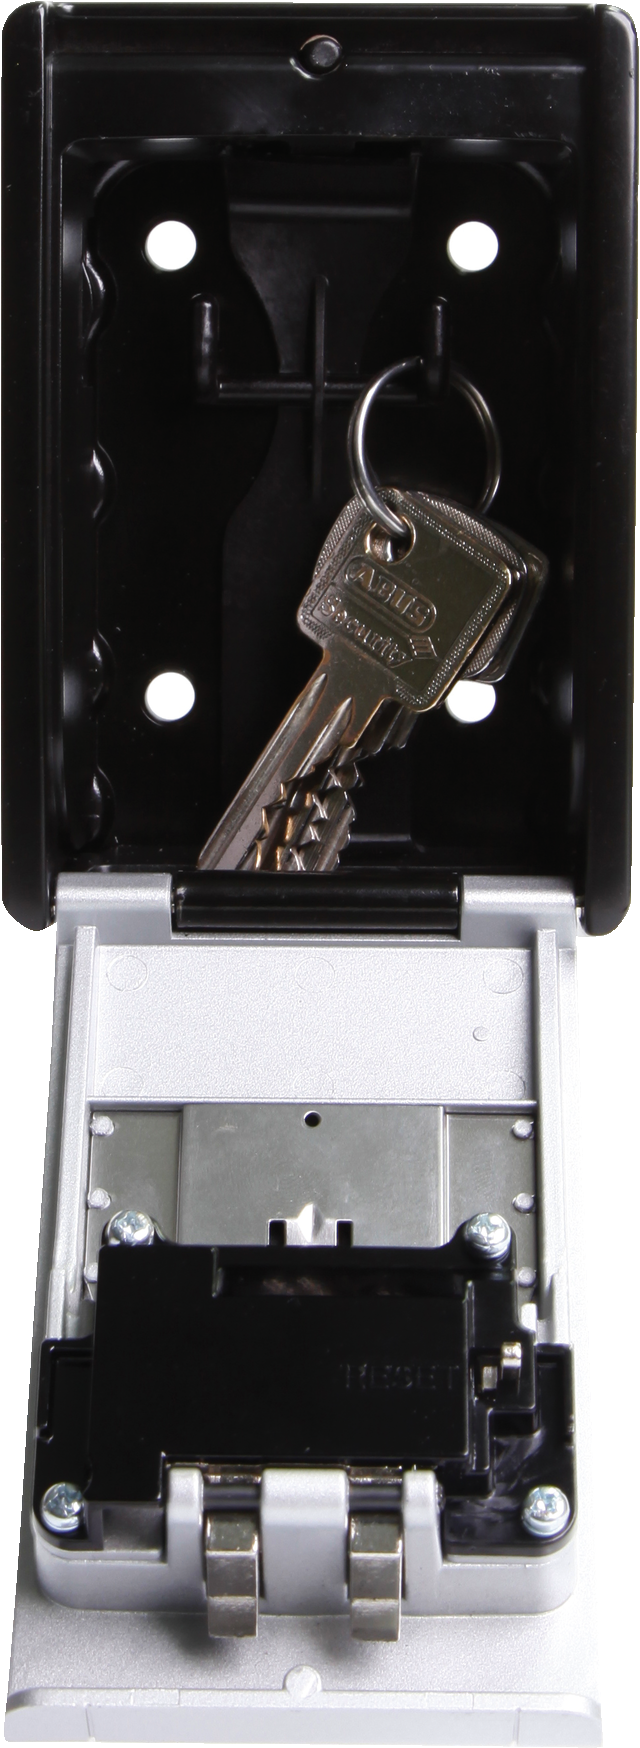 KeyGarage™ 787 BIG with keys